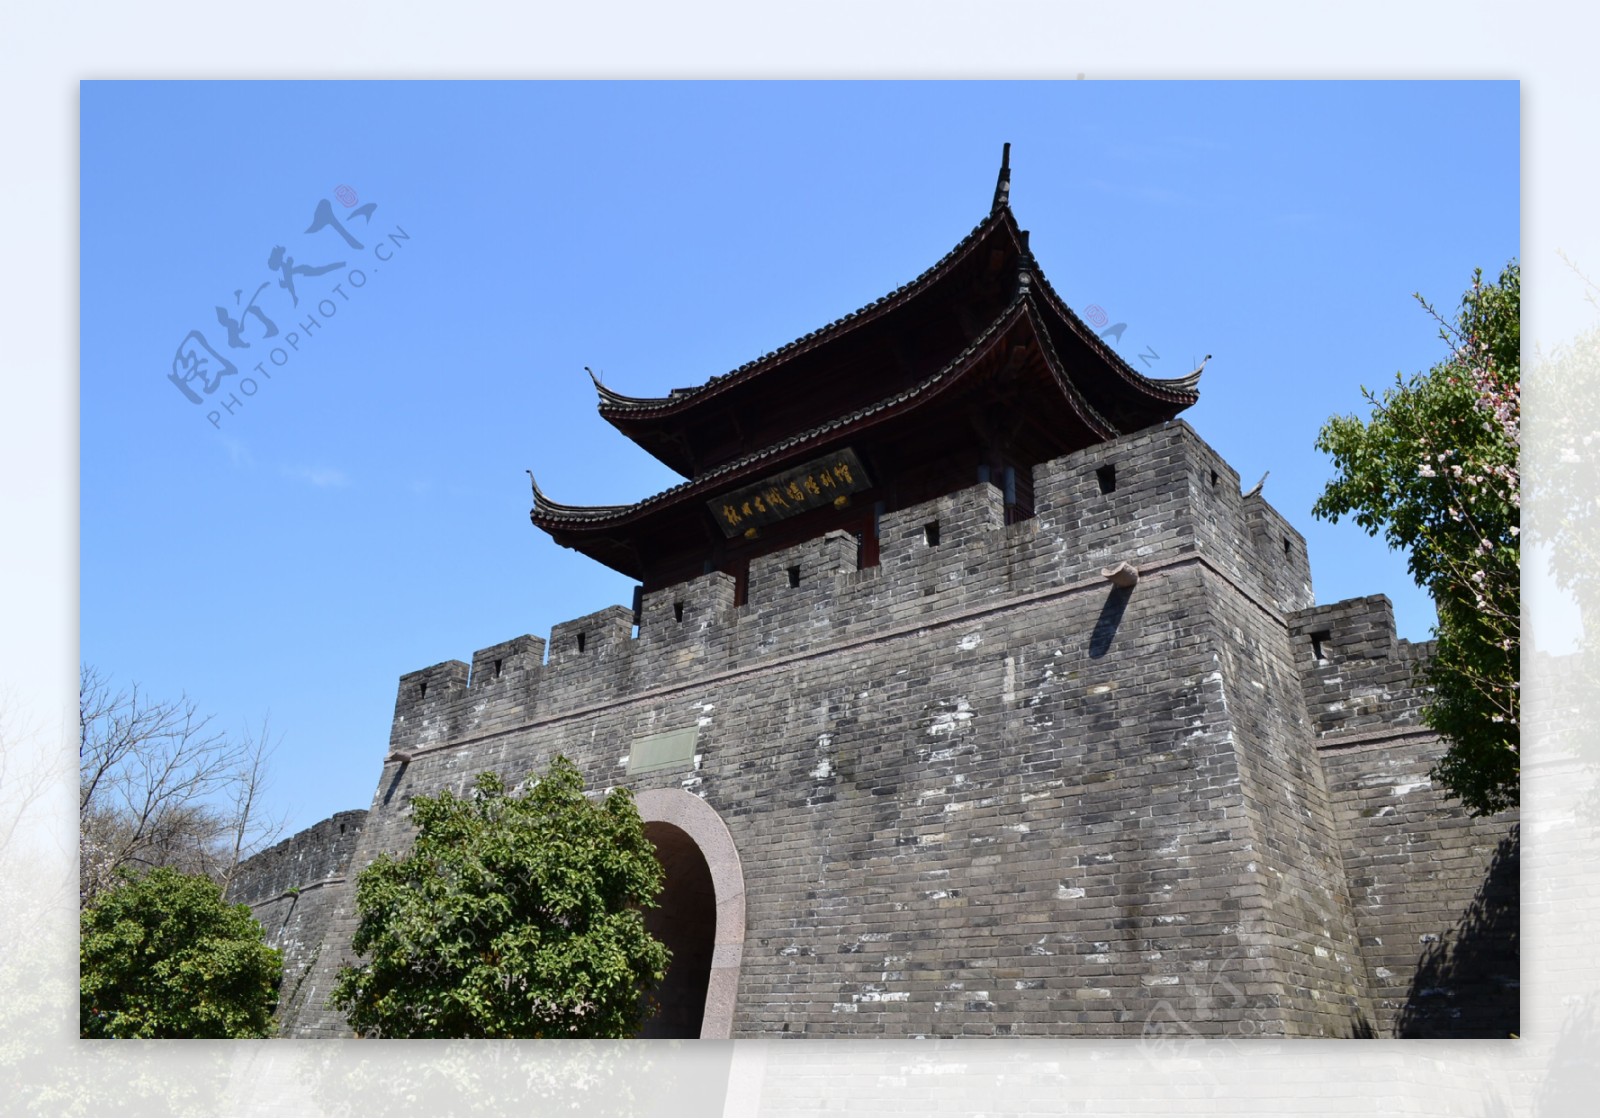 杭州古城墙陈列馆图片